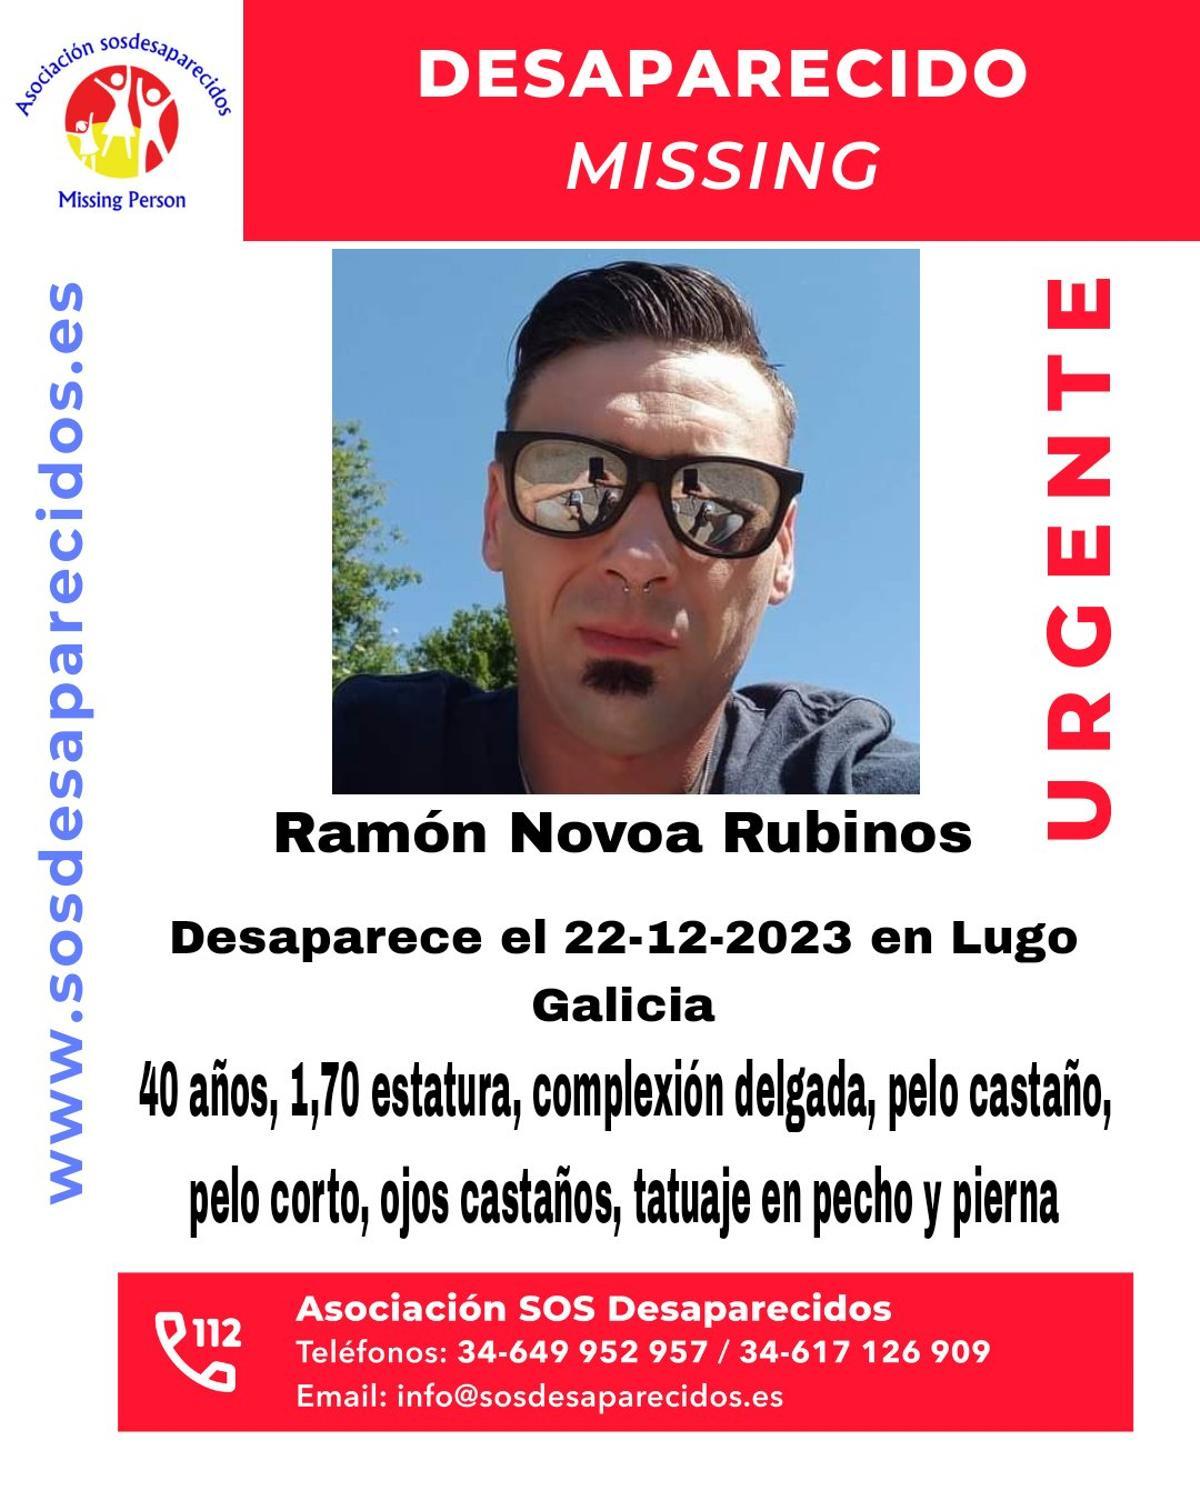 Aviso de SOS Desaparecidos por la desaparición en Lugo de este hombre, el pasado 22 de diciembre.